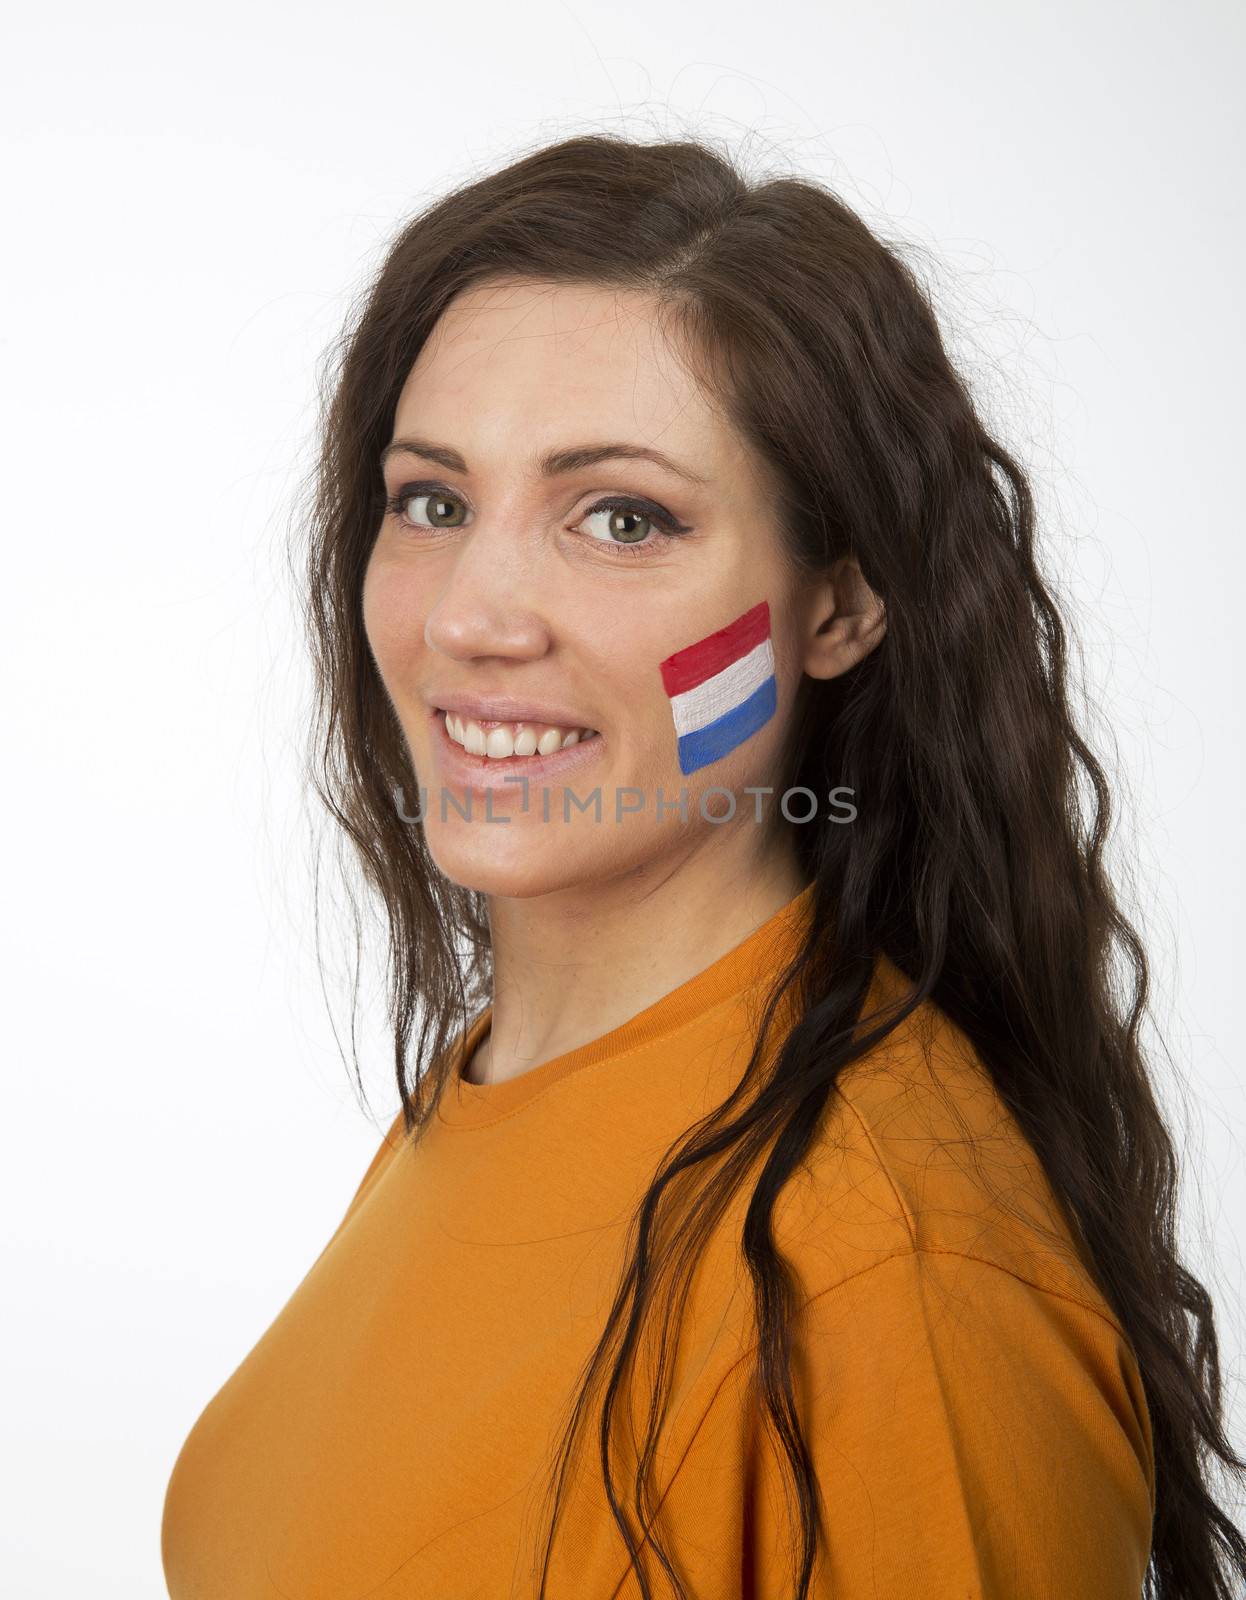 Dutch Girl by gemenacom